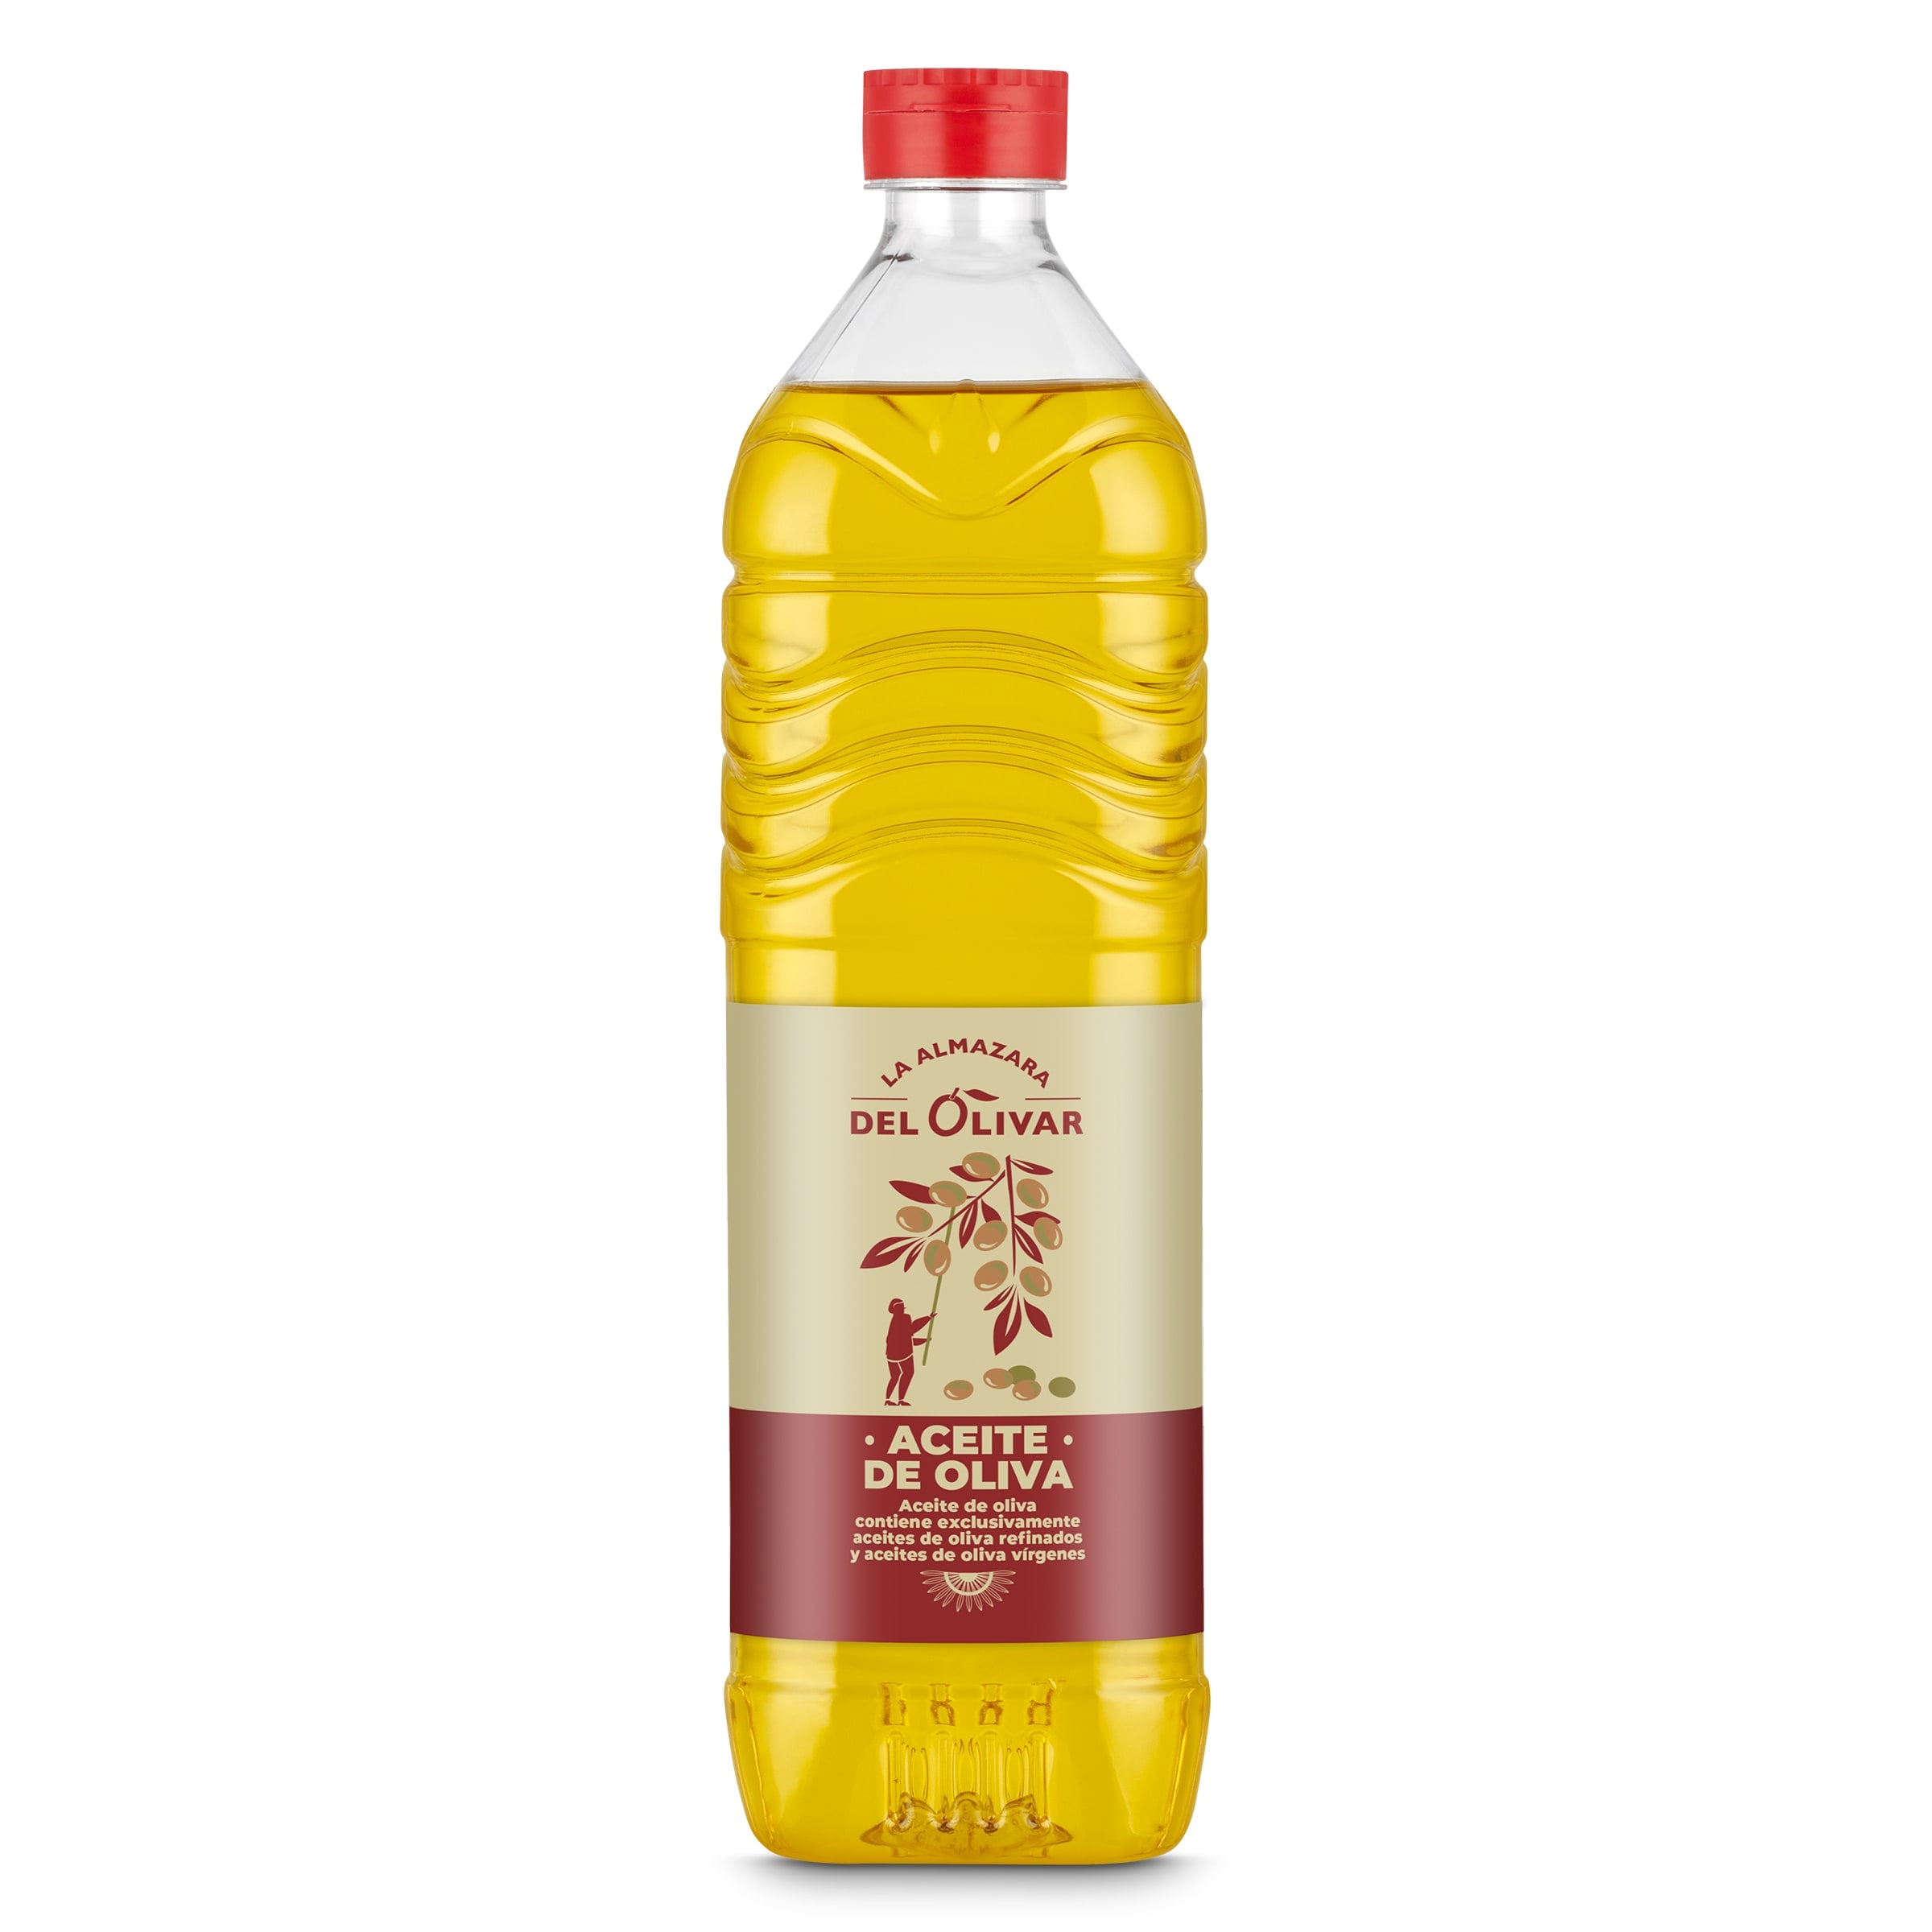 Comprar aceite de oliva suave la españ en Supermercados MAS Online